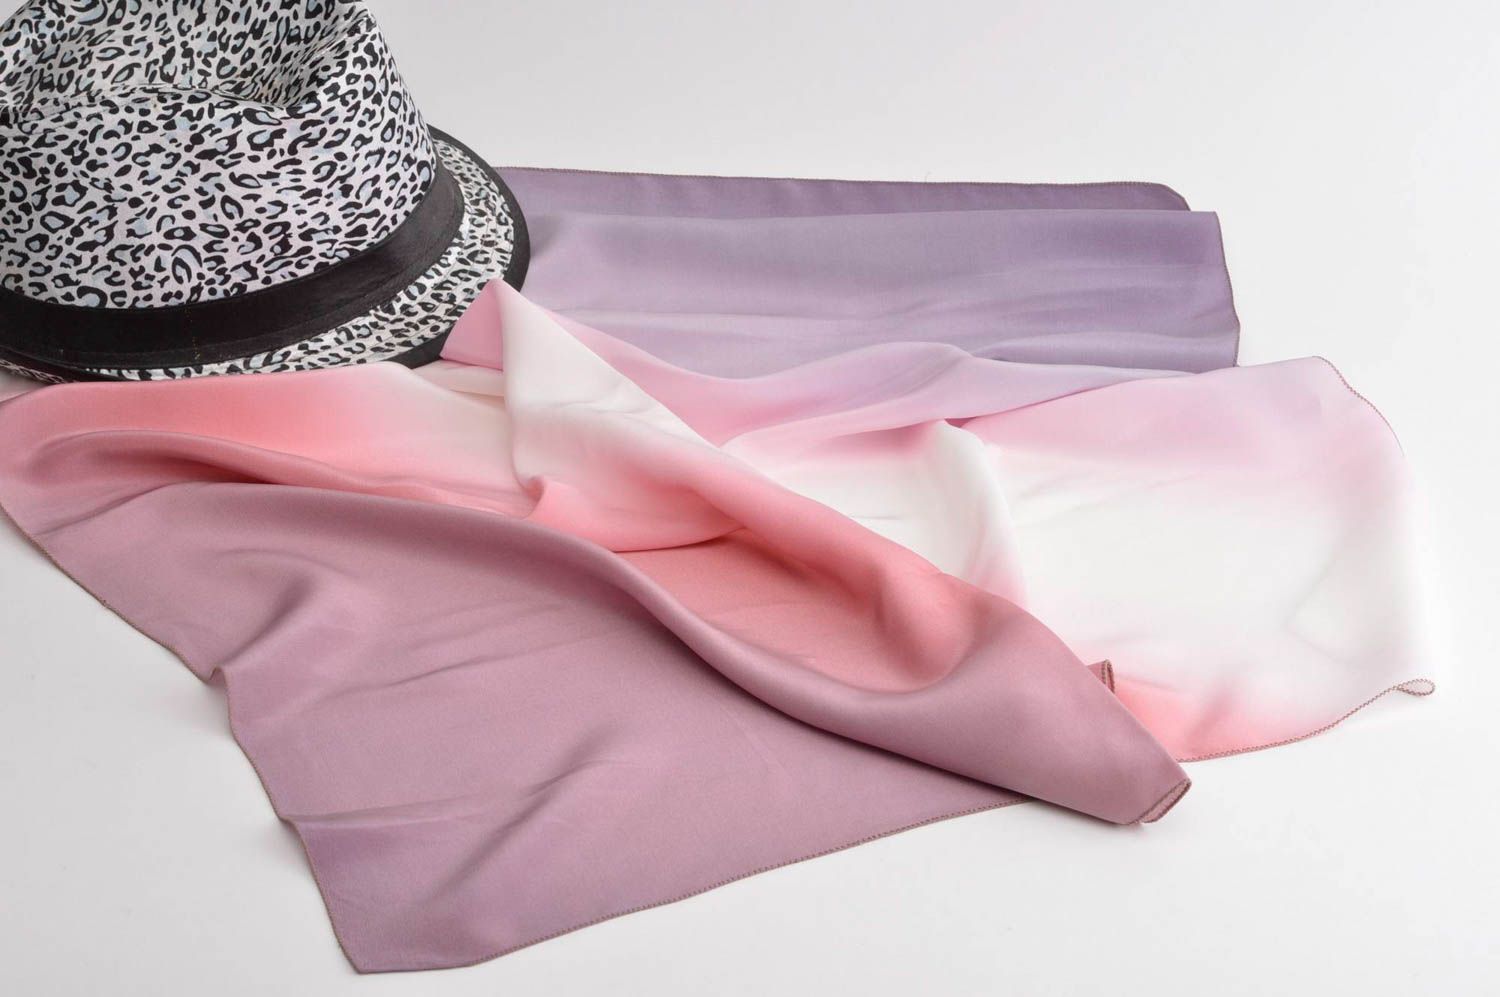 Светлый платок ручной работы оригинальный подарок нарядный платок из шелка фото 1